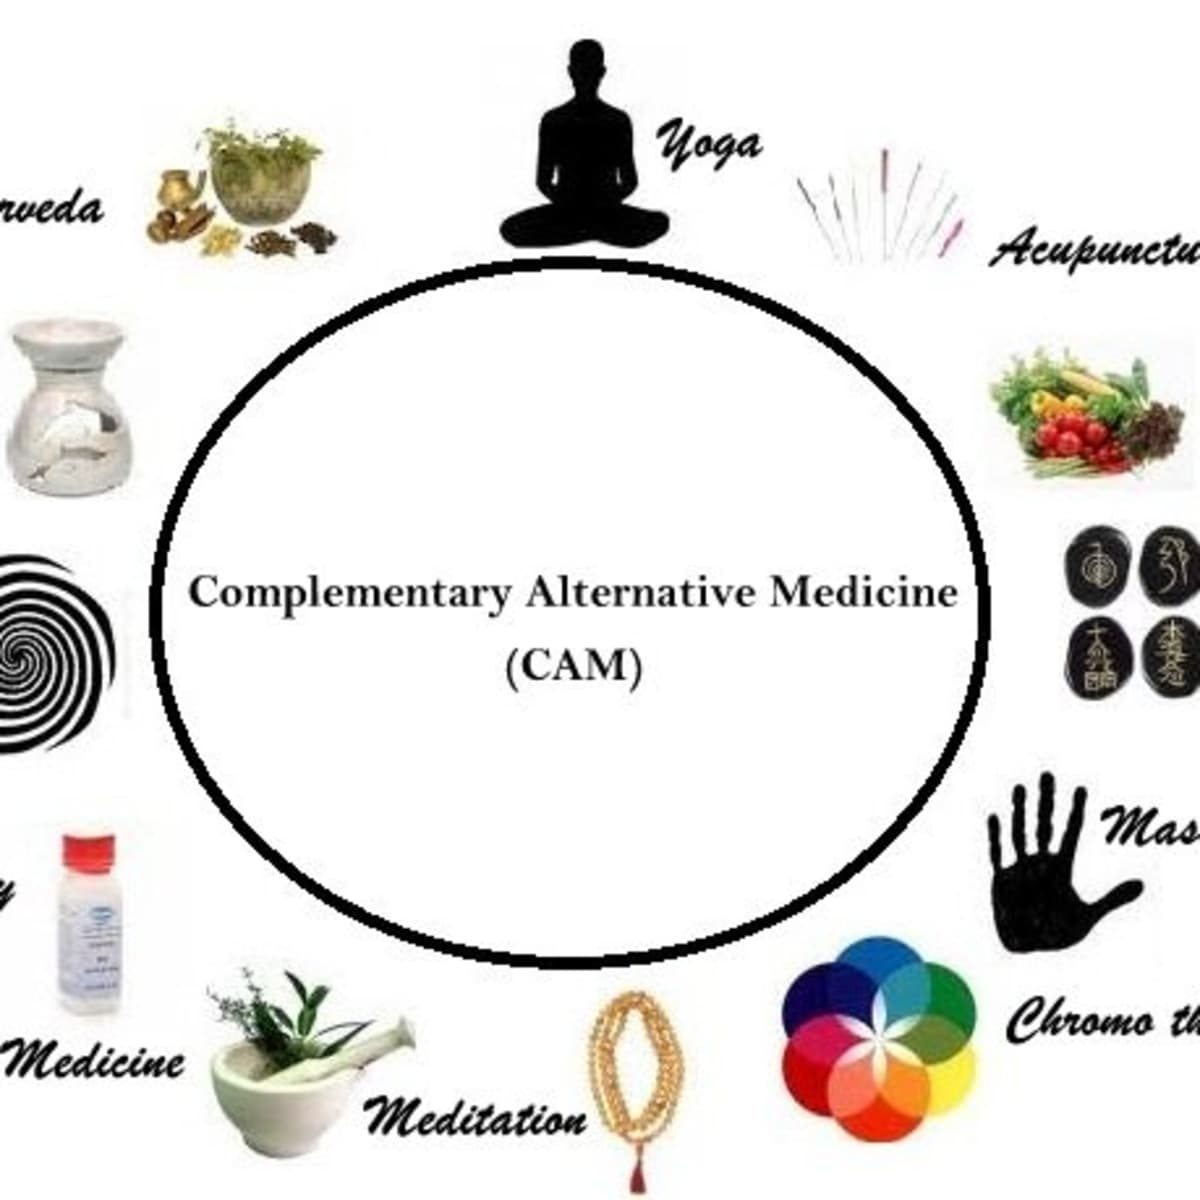 Monografía Escarchado Plasticidad Top 10 Complementary and Alternative Medicine Therapies that work - HubPages